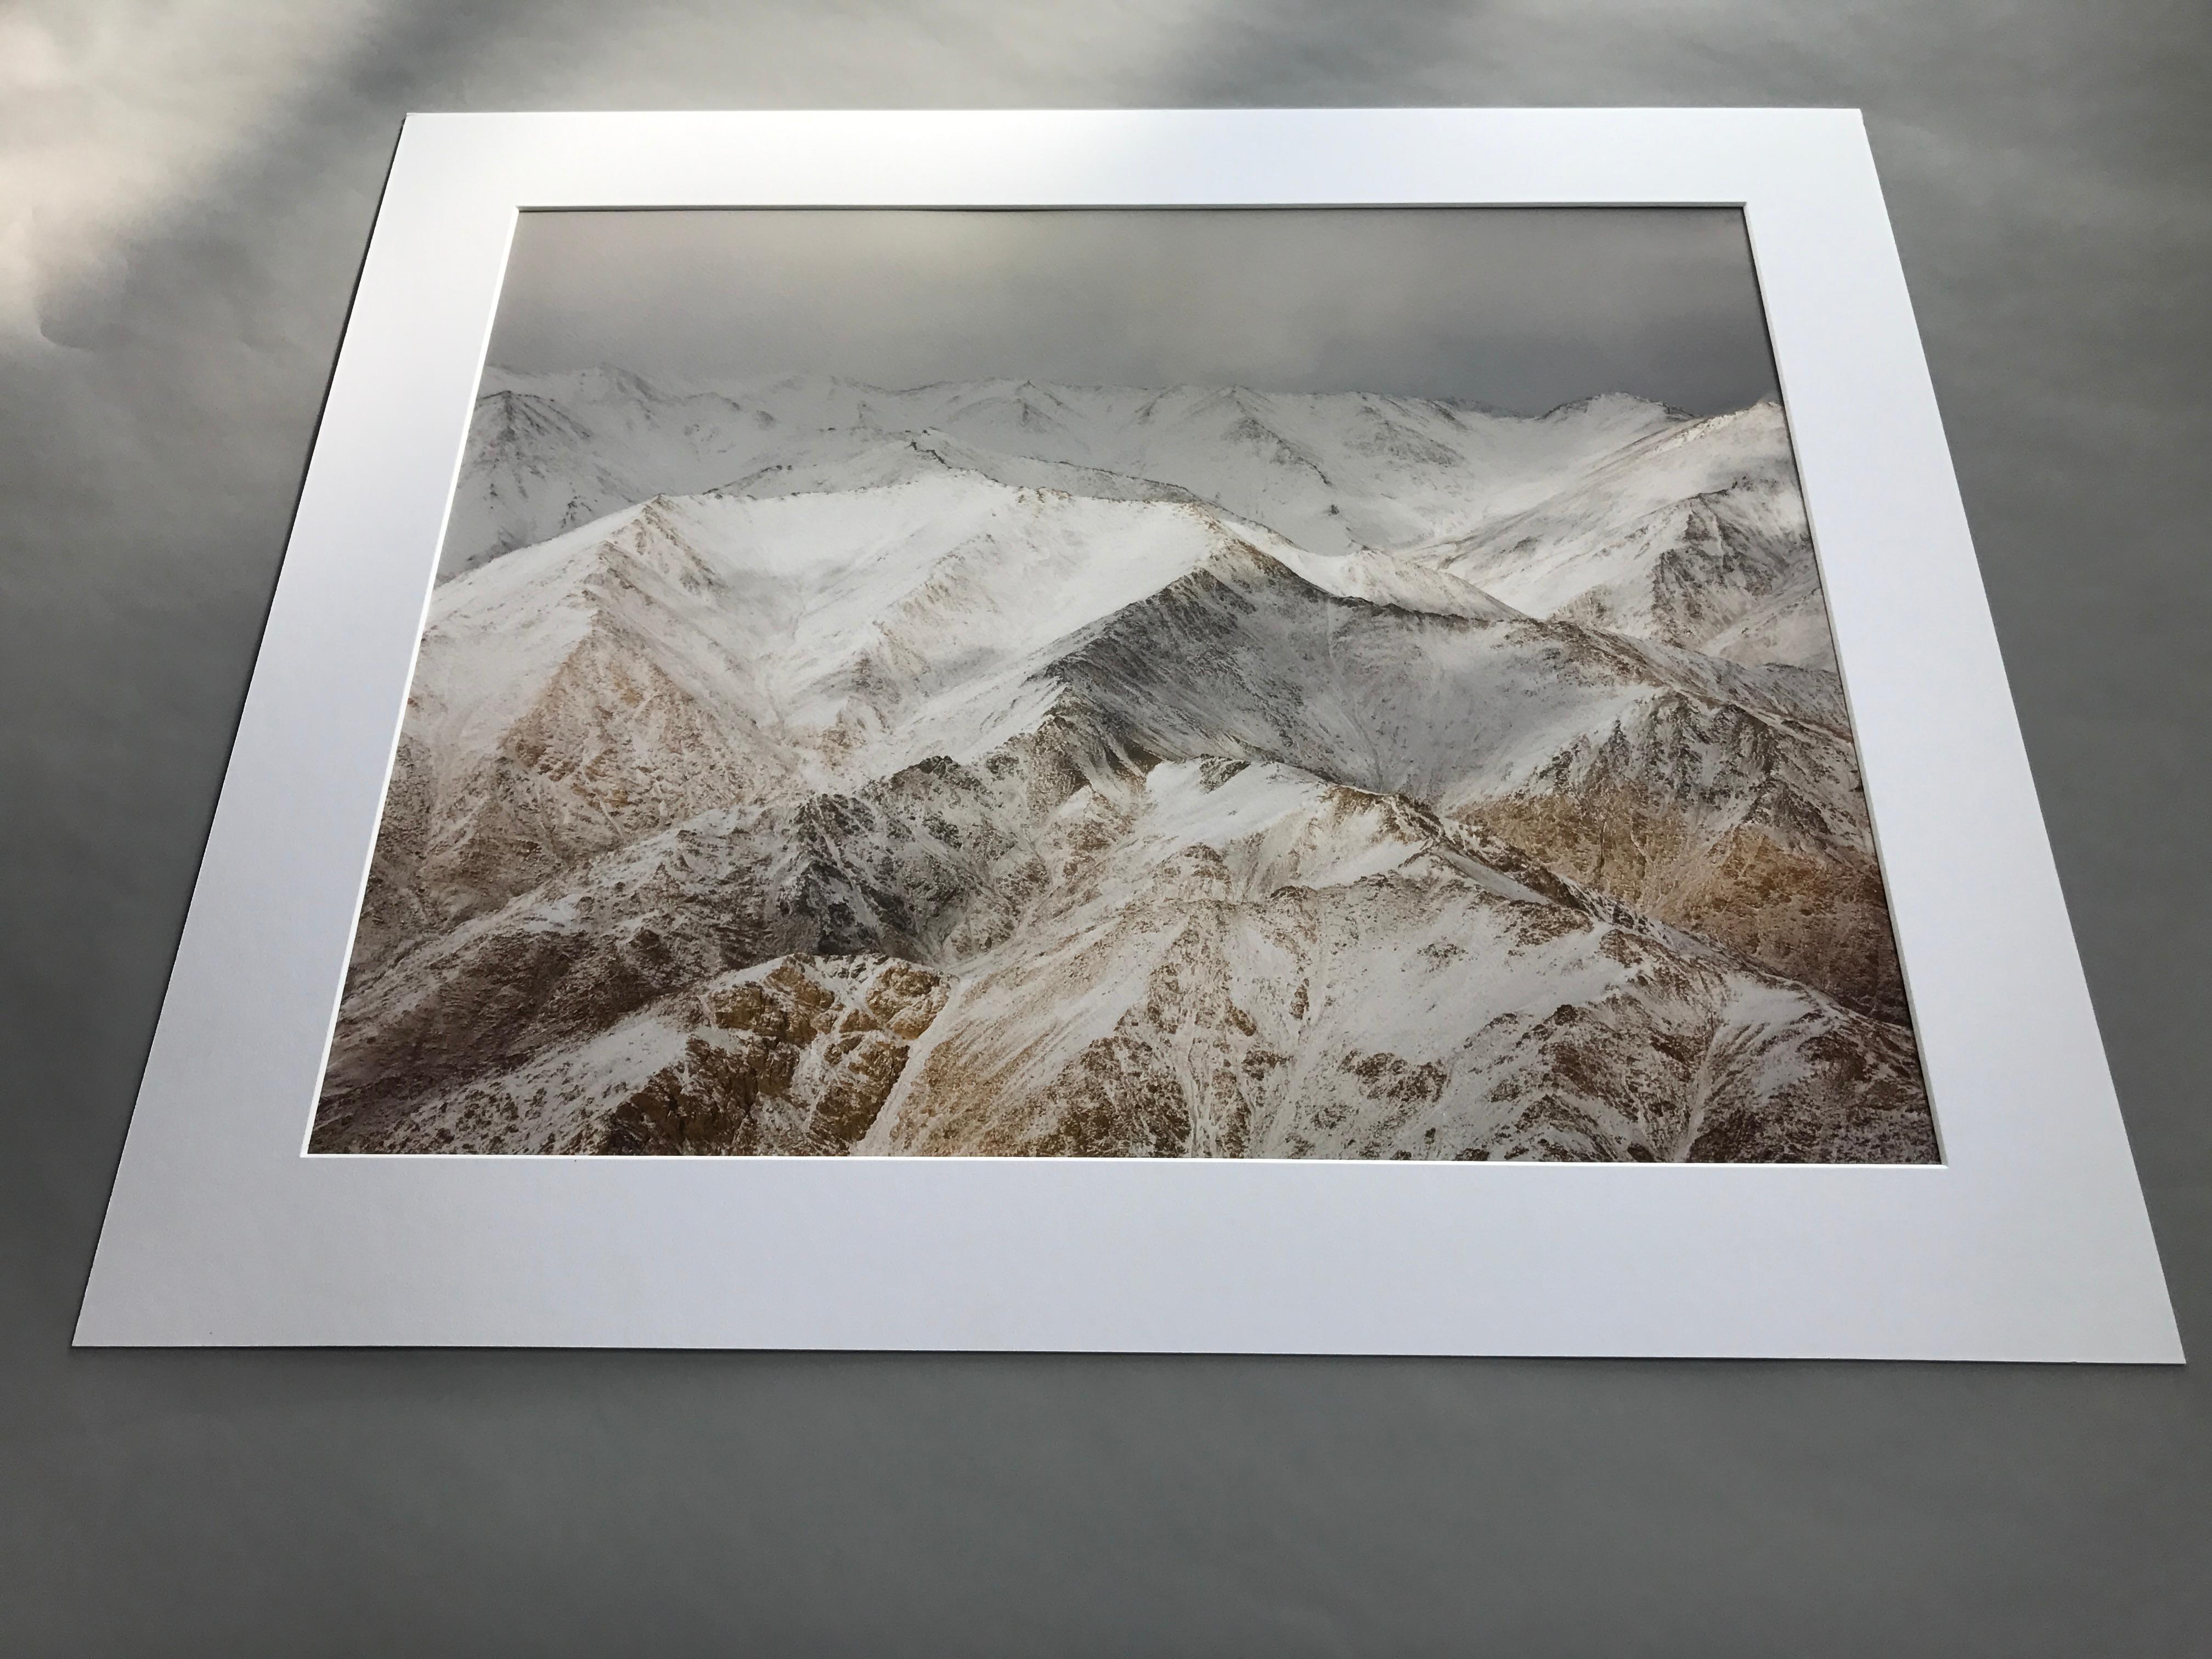 Himalayas - Photograph by Ashok Sinha